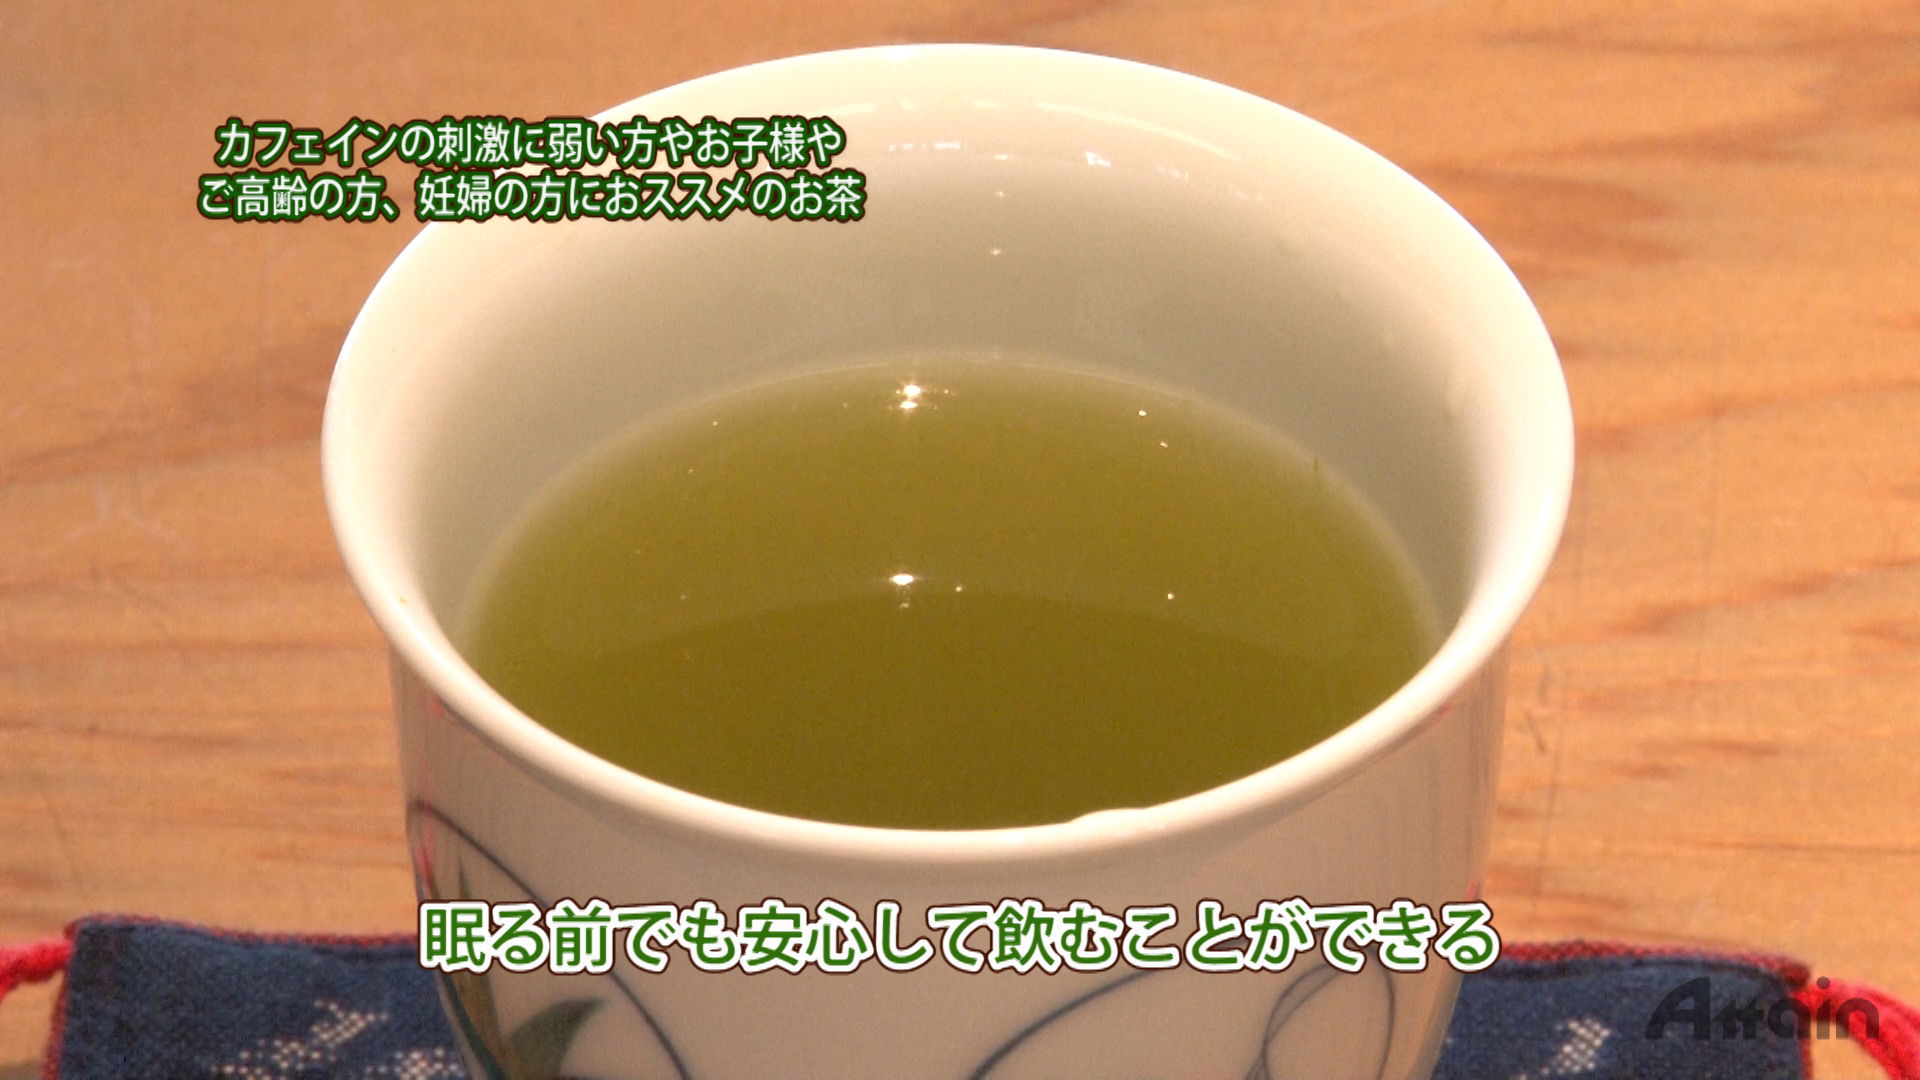 『お茶の選び方』をYouTube【日本通TV】チャンネルに公開